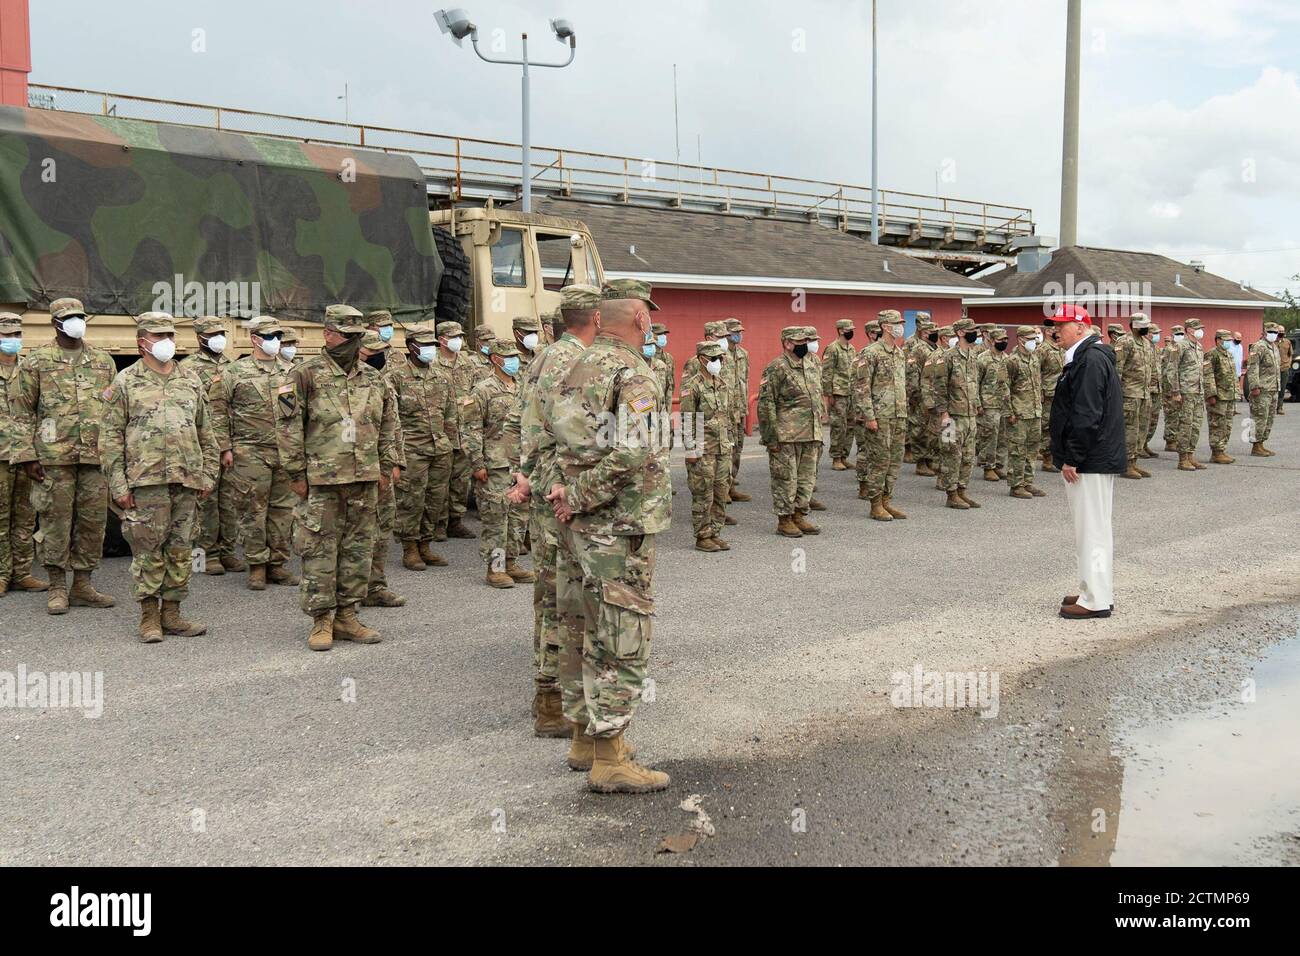 El presidente Trump en Luisiana. El presidente Donald J. Trump visita aproximadamente 200 soldados de la Guardia Nacional el sábado, 29 de agosto de 2020, en el estadio Cougar en Lake Charles, Louisiana, durante su visita para ver los daños causados por el huracán Laura. Foto de stock